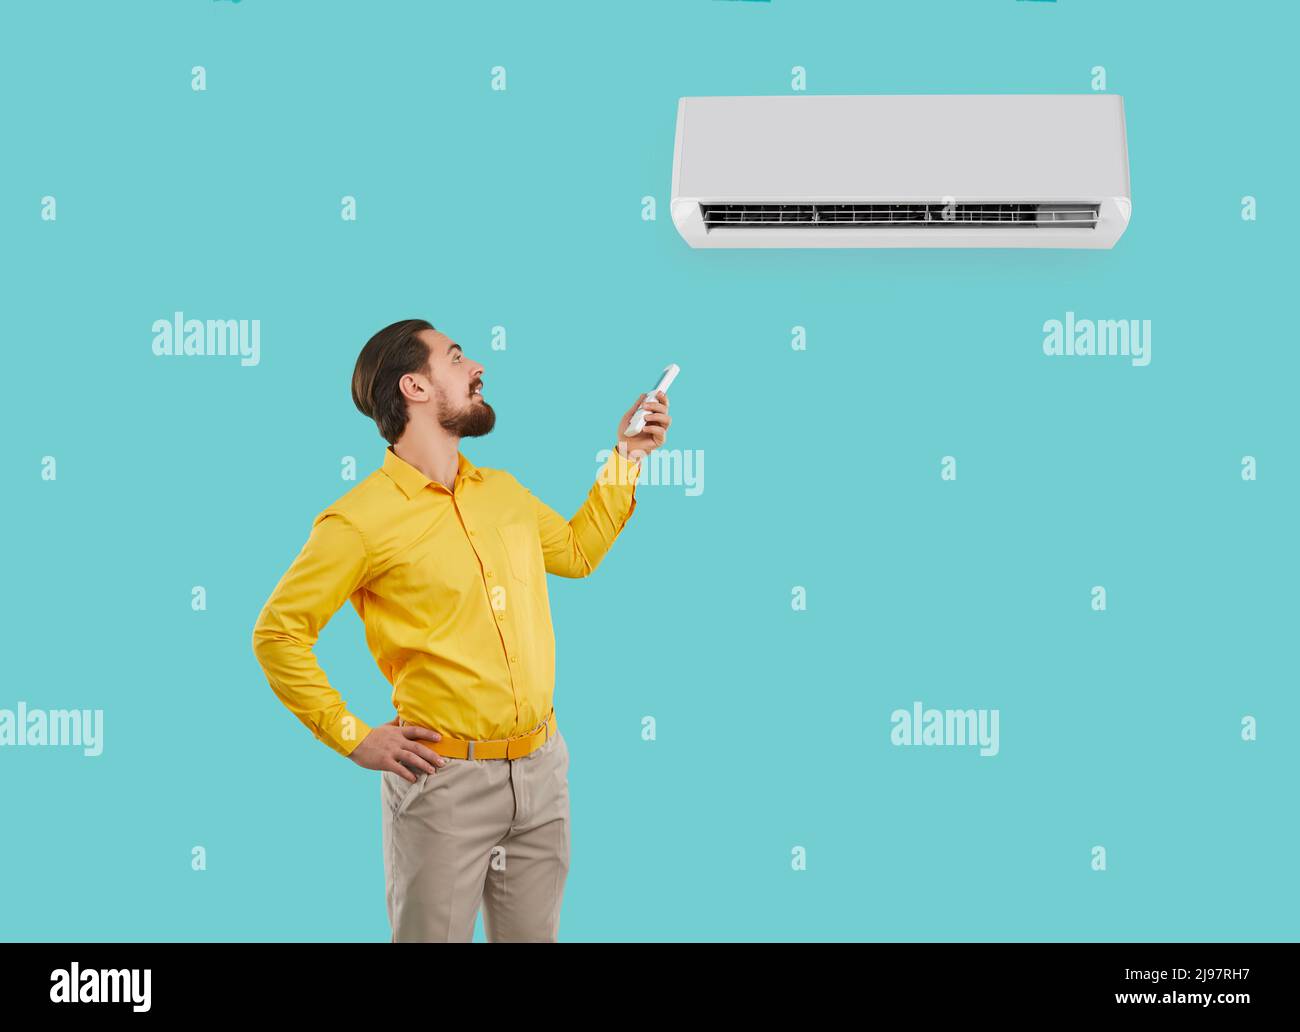 L'uomo felice che tiene i telecomandi o regola il condizionatore d'aria appena installato a parete. Foto Stock